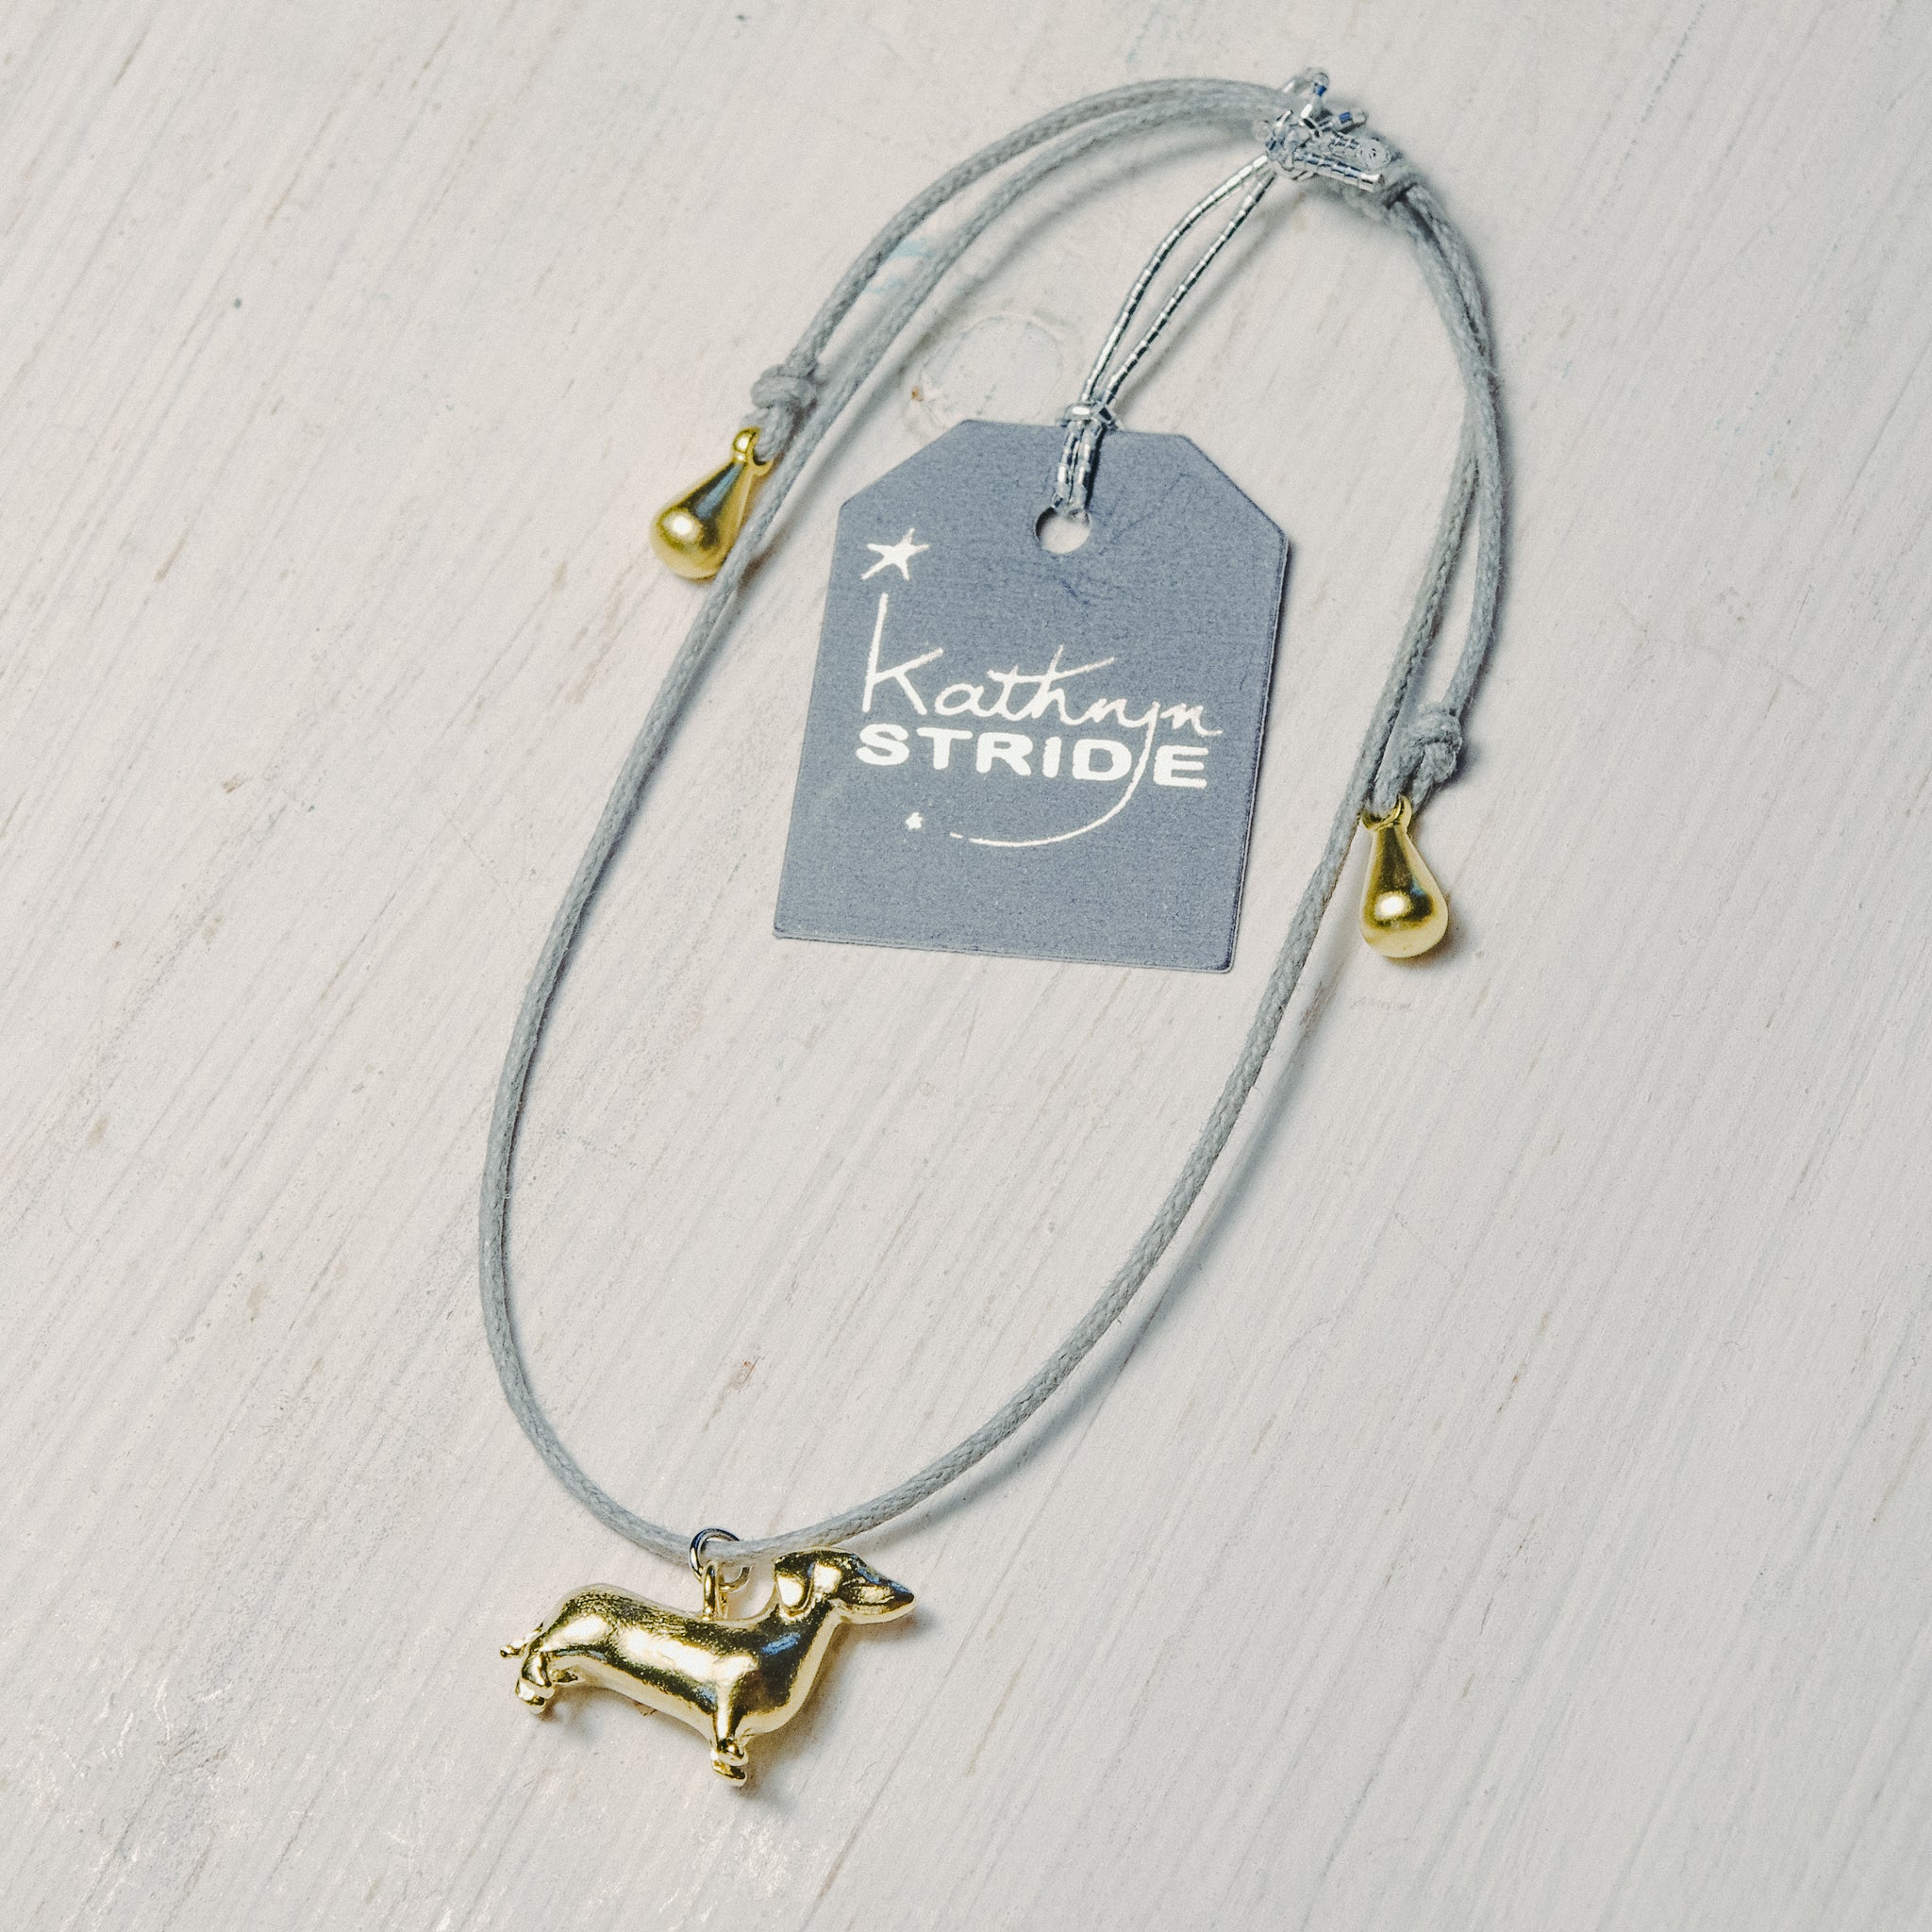 Grey cord Bracelet with tiny Dachshund charm